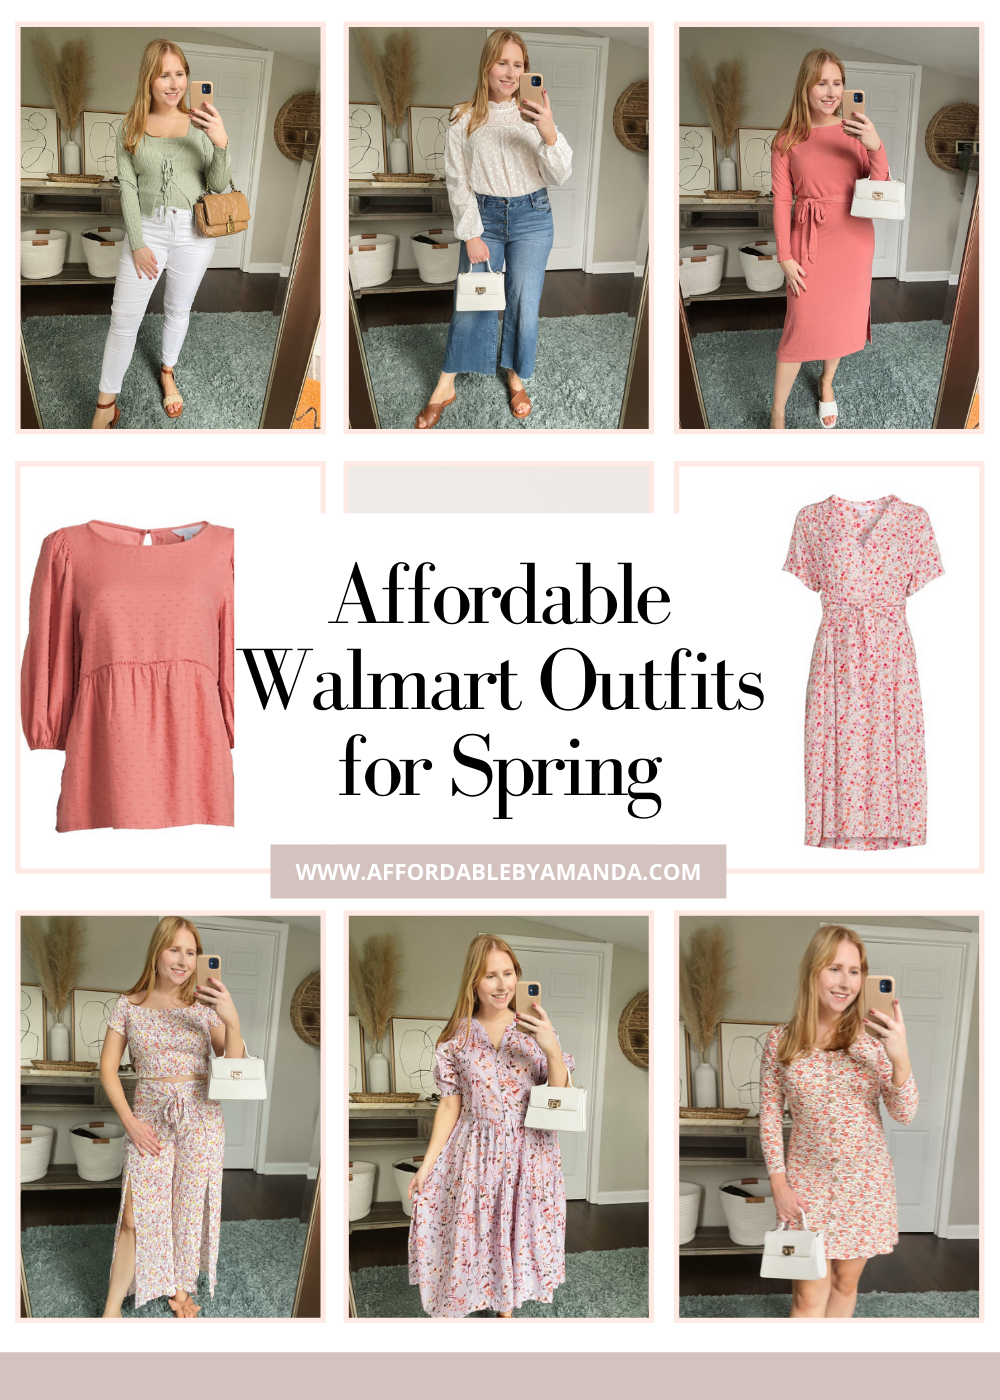 https://affordablebyamanda.com/wp-content/uploads/2022/01/Affordable-Walmart-Outfits-for-Spring-2022.png